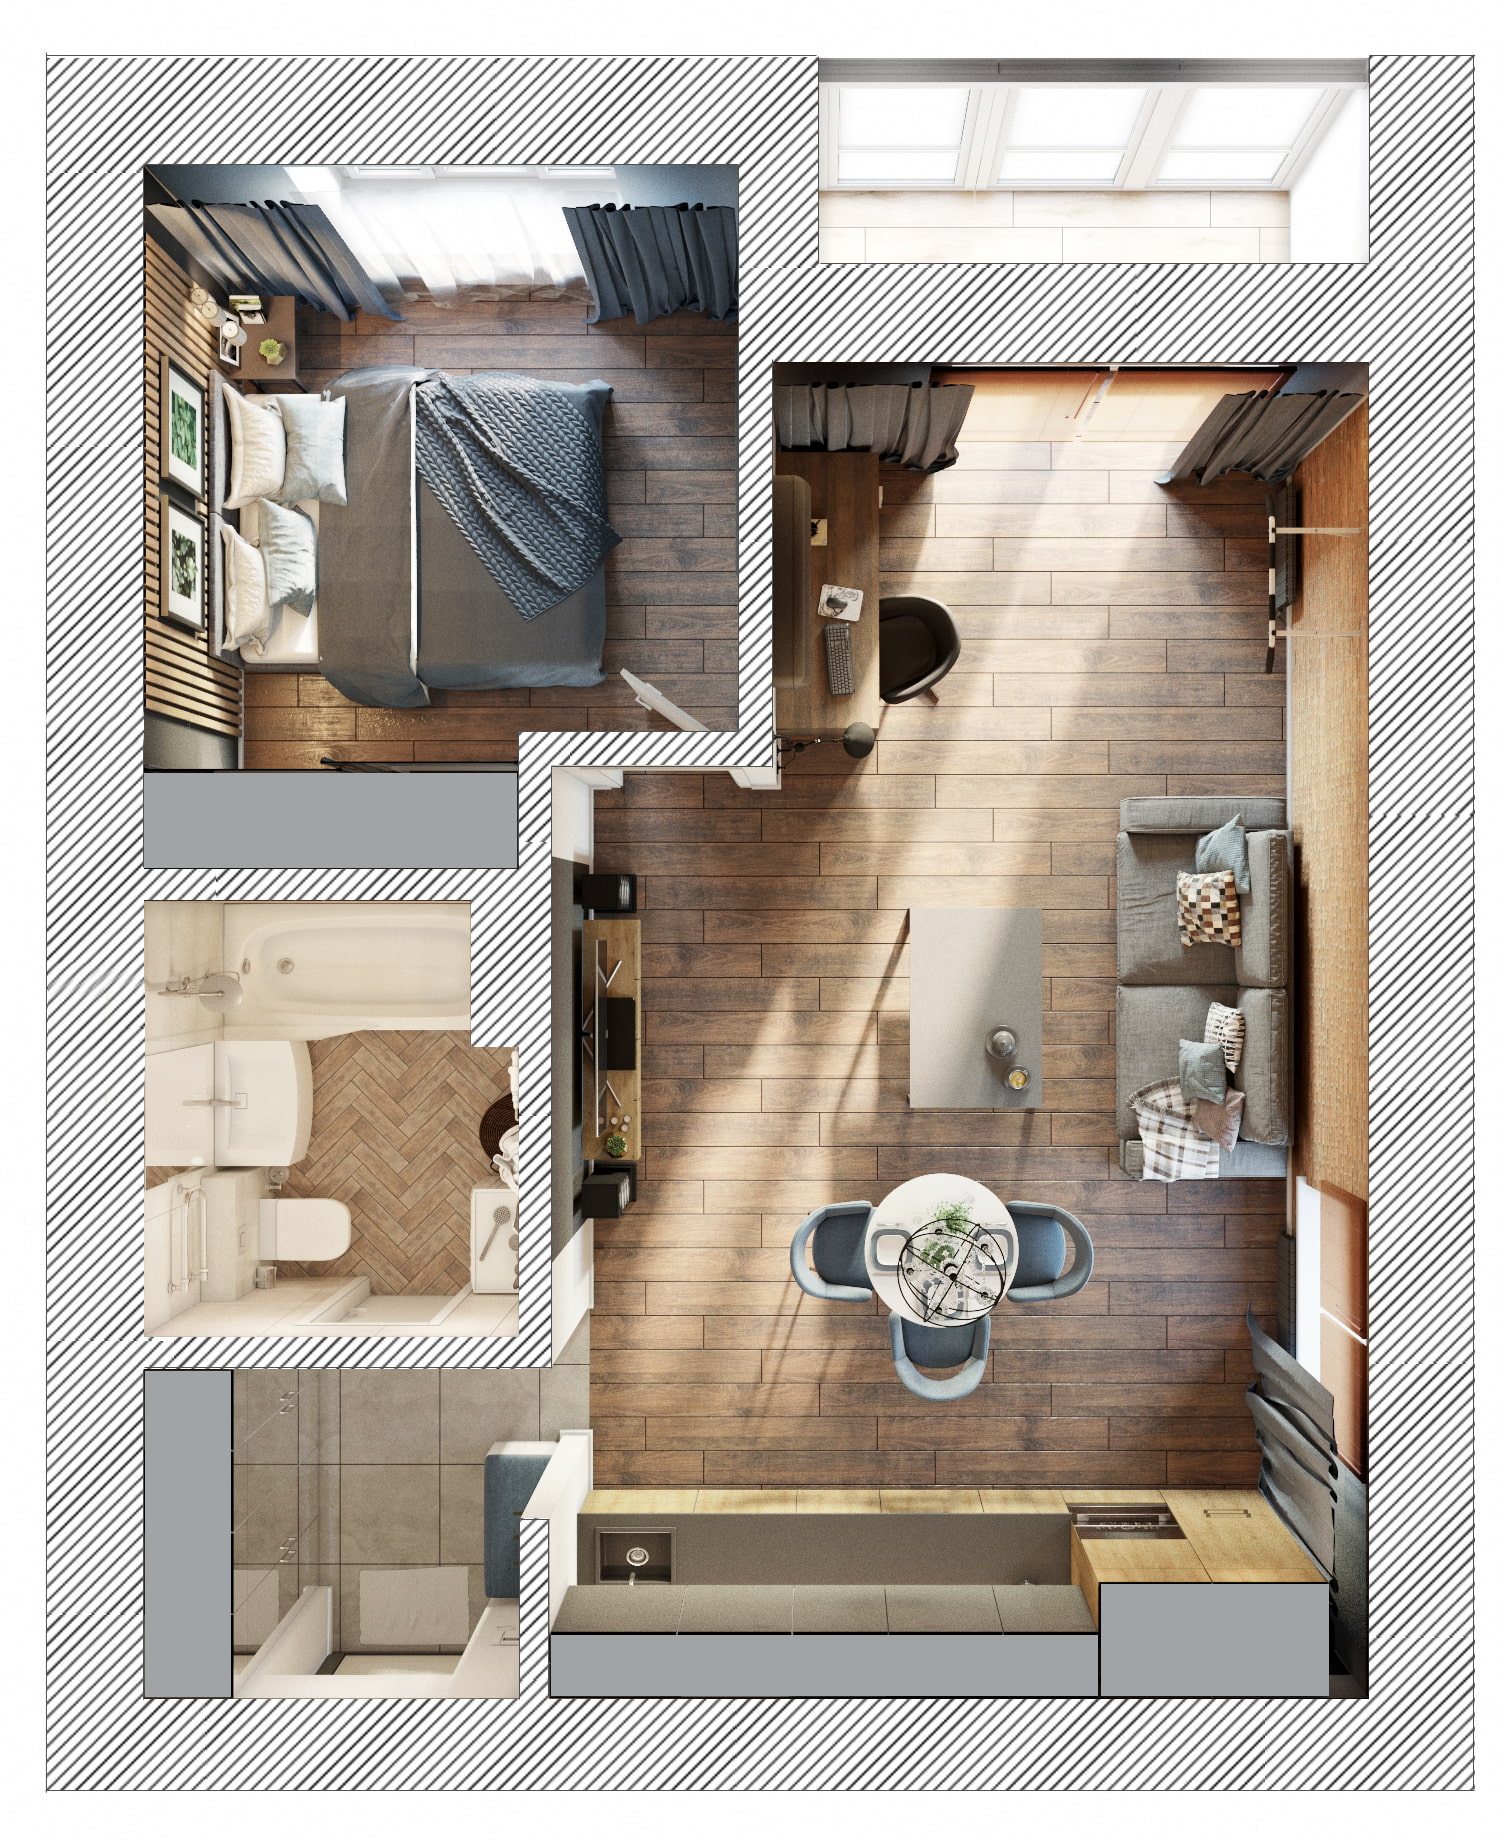 Дизайн квартиры 35 кв. м. [60+ фото] планировки 1-комнатных, студий иевродвушек